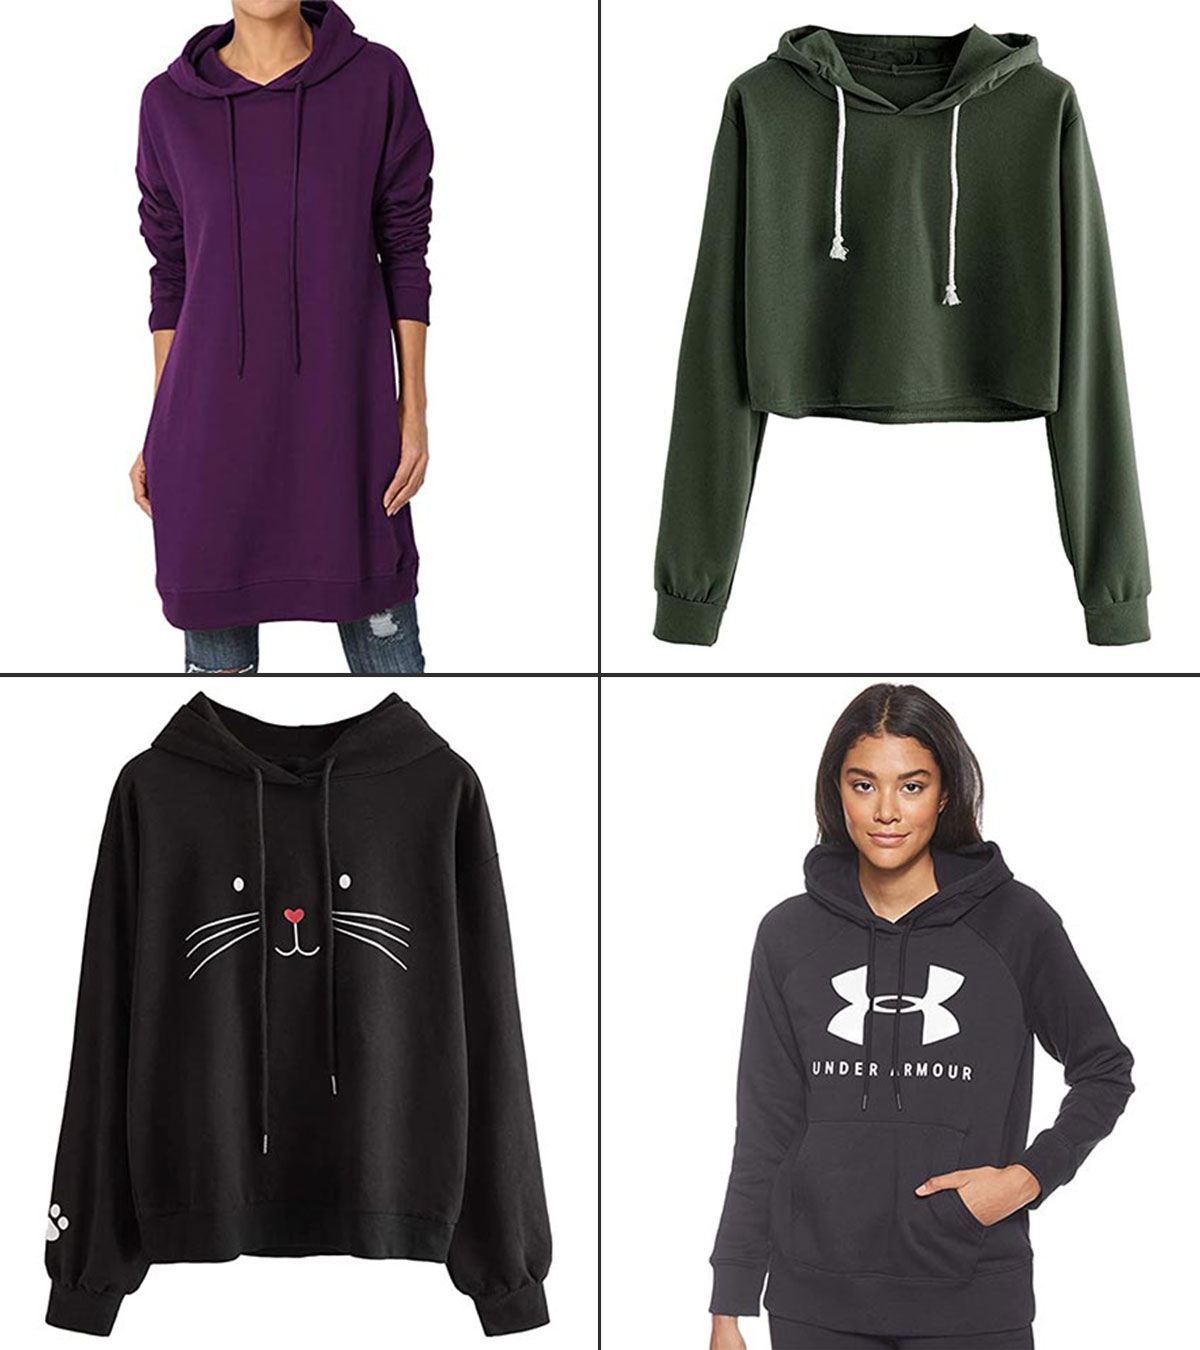 hoodies to buy